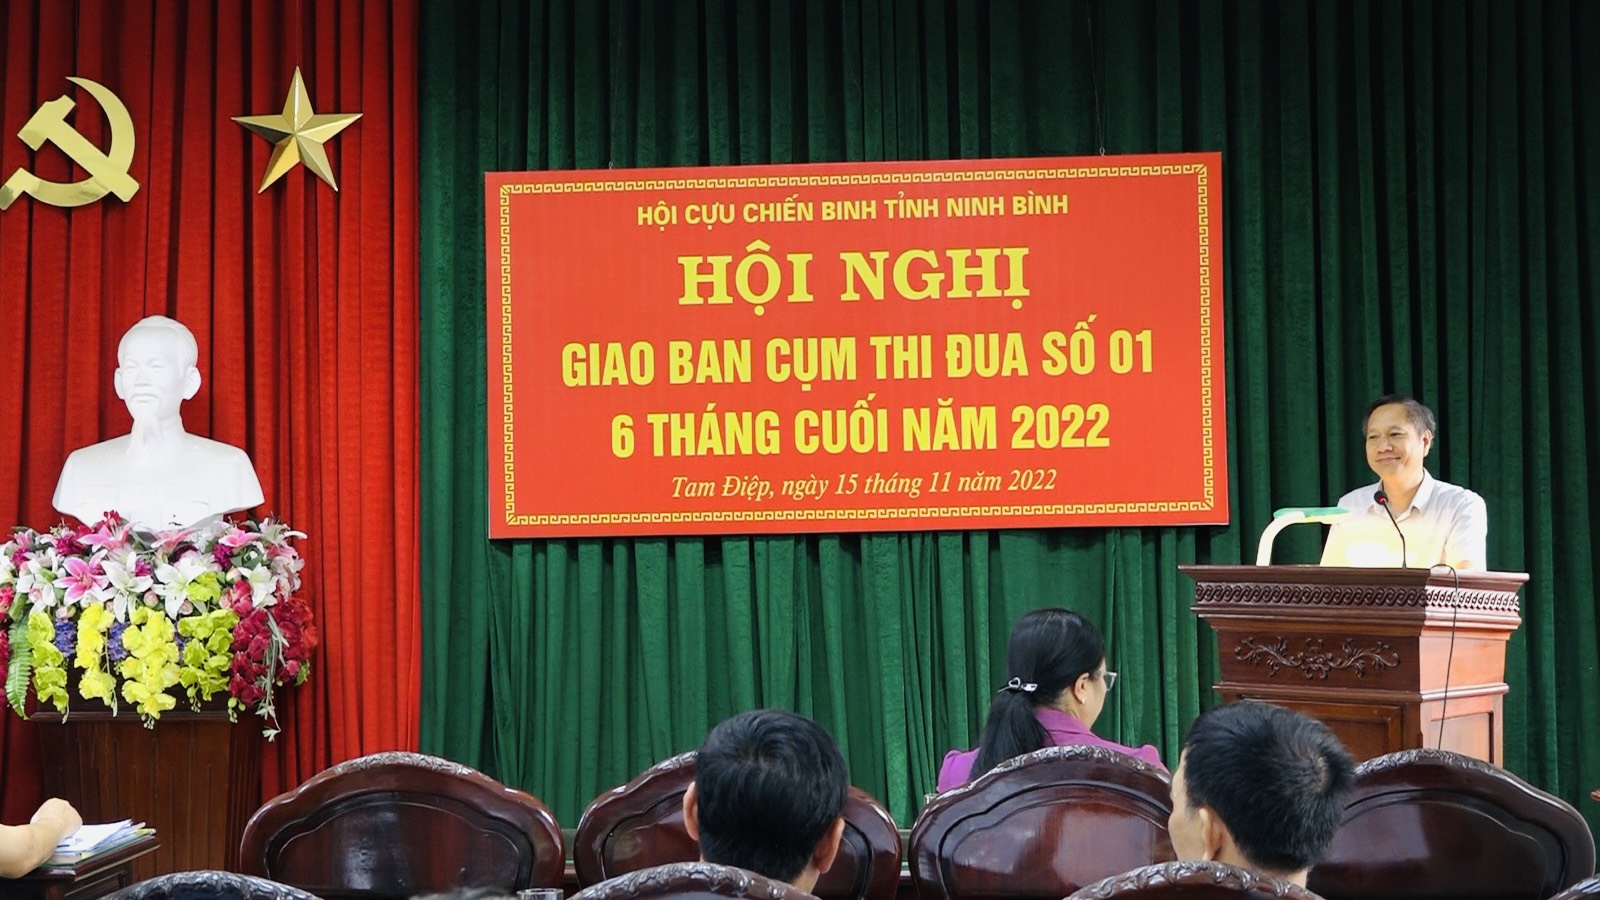 Hội CCB thành phố Tam Điệp tổ chức Hội nghị giao ban Cụm thi đua số 1 của Hội CCB tỉnh Ninh Bình 6 tháng cuối năm 2022.